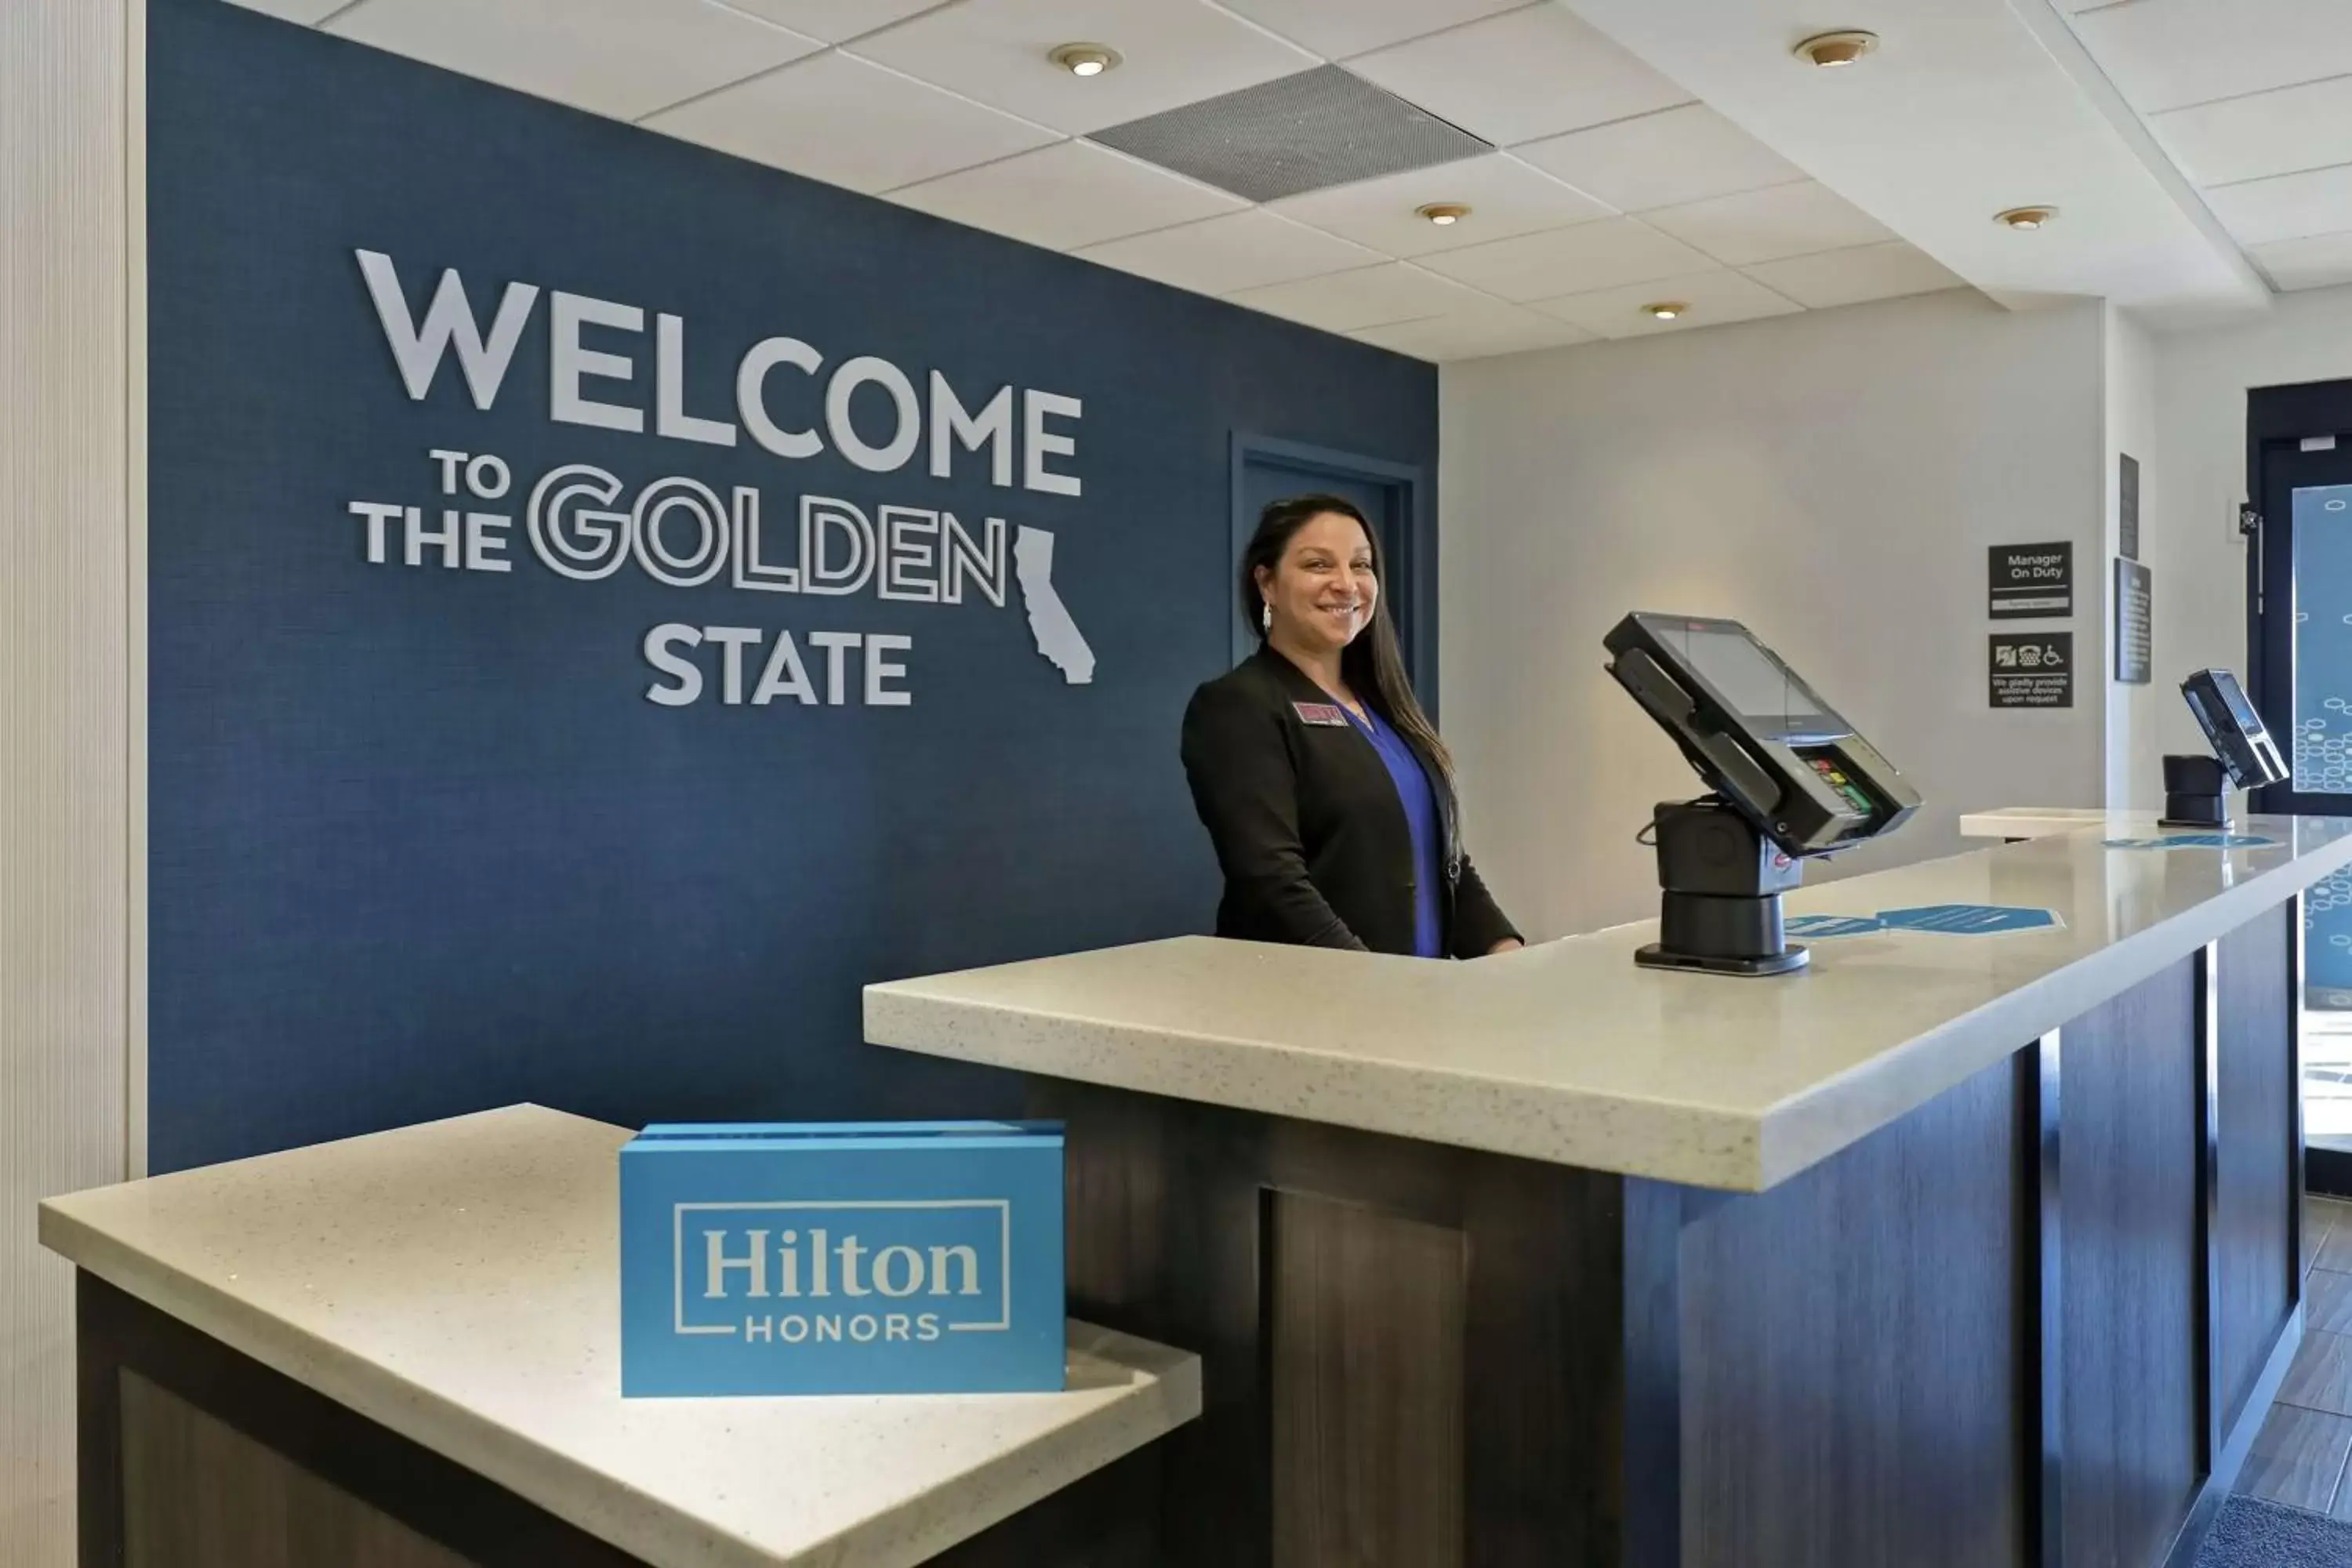 Lobby or reception, Lobby/Reception in Hampton Inn by Hilton Turlock